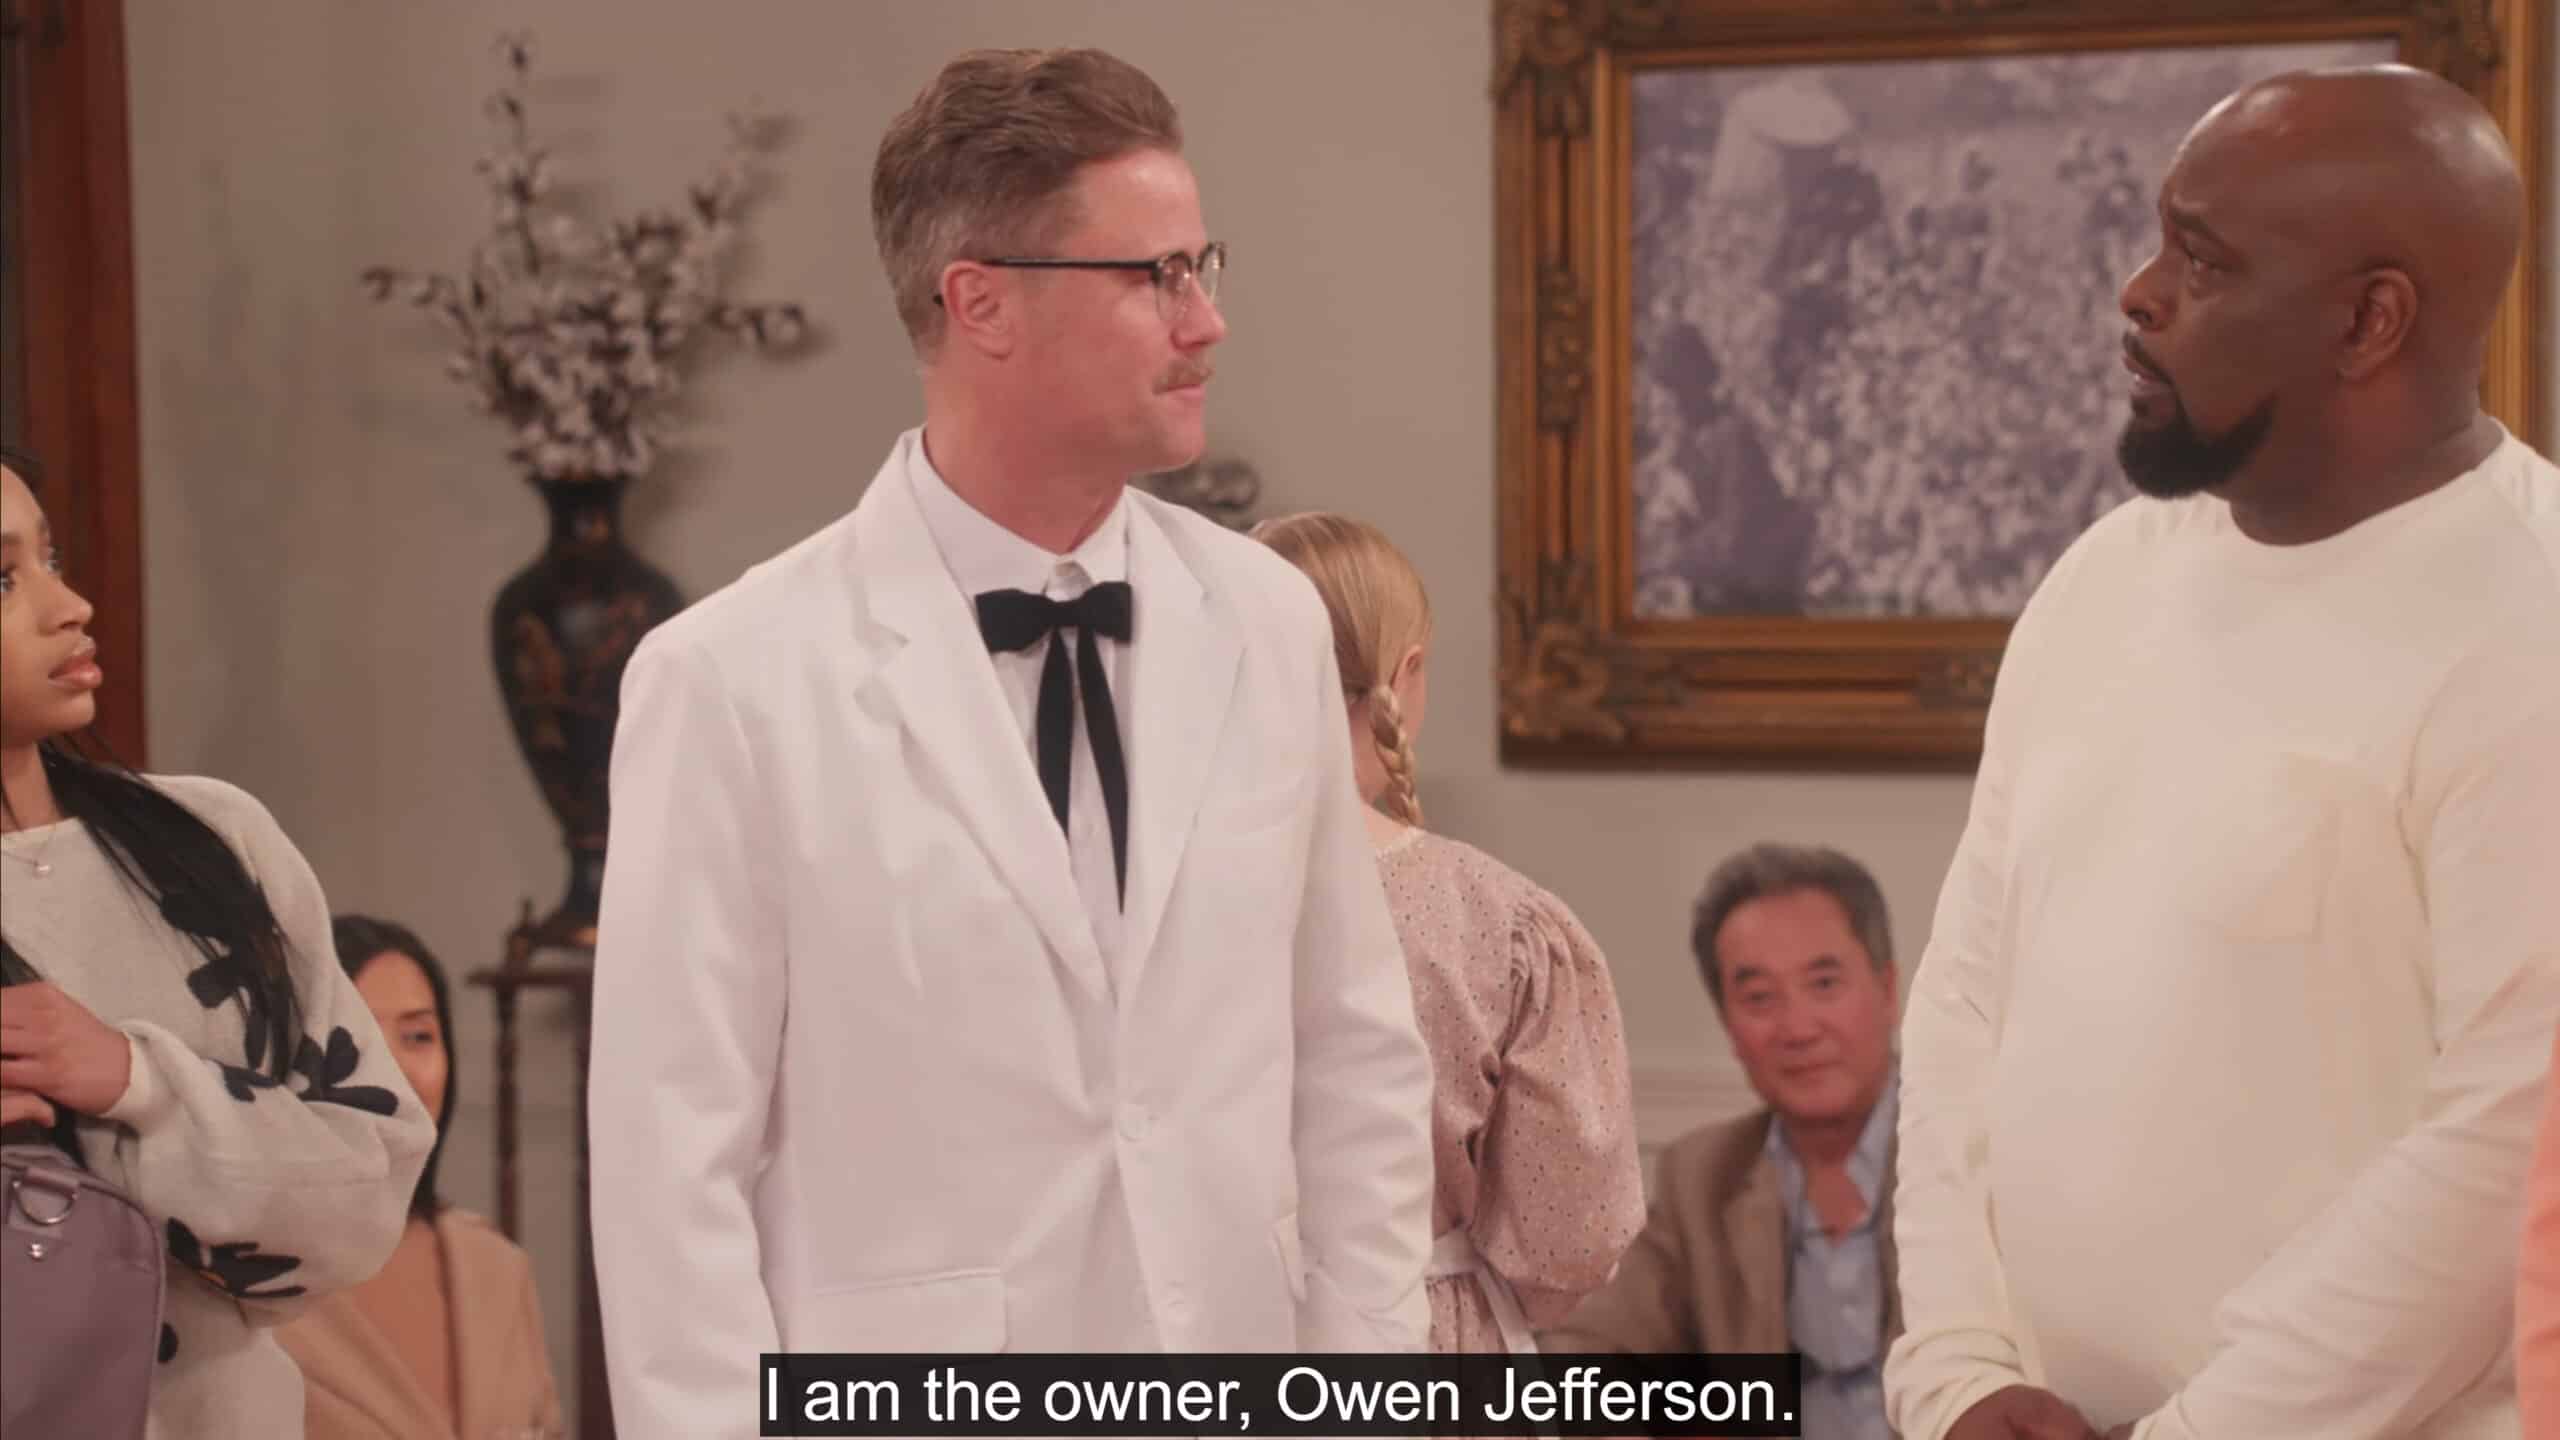 Owen Jefferson (Eric Nenninger) introducing himself